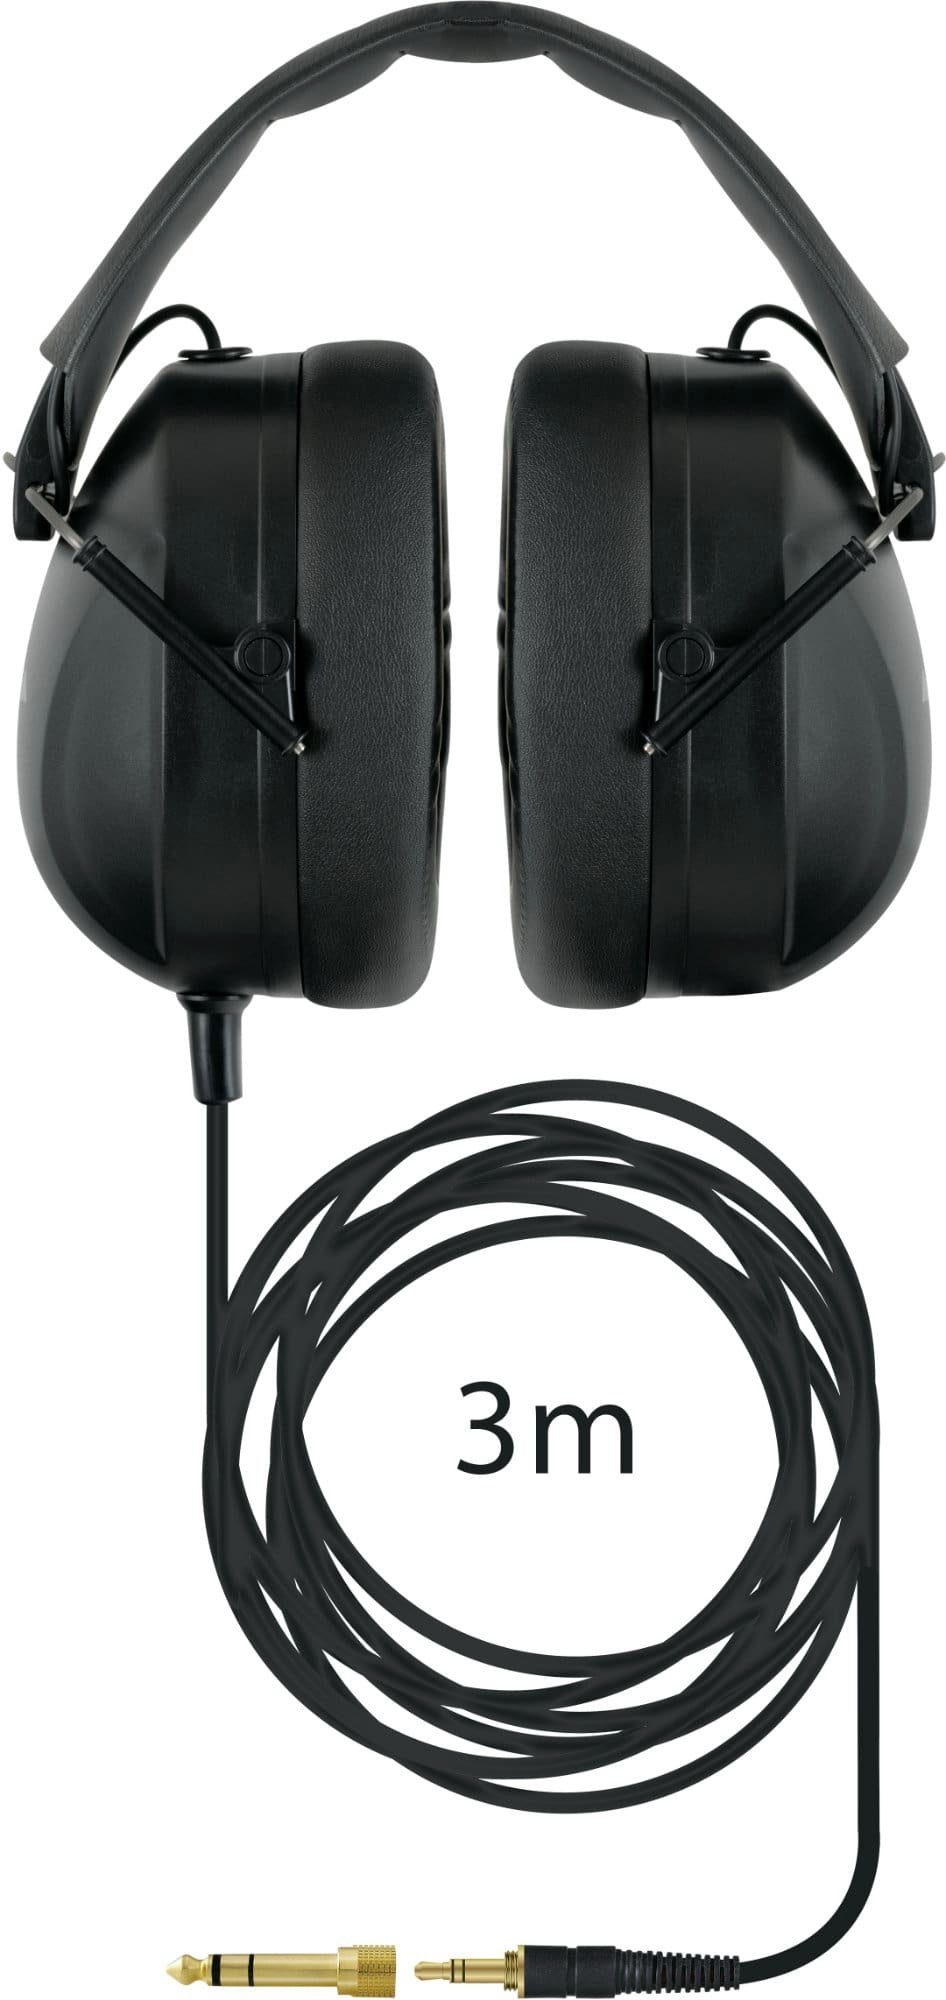 22 Kopfhörer dB) (gesamtlärmpegelreduzierung ca. mit um HD-995 HiFi-Kopfhörer Schalldämpfung XDrum